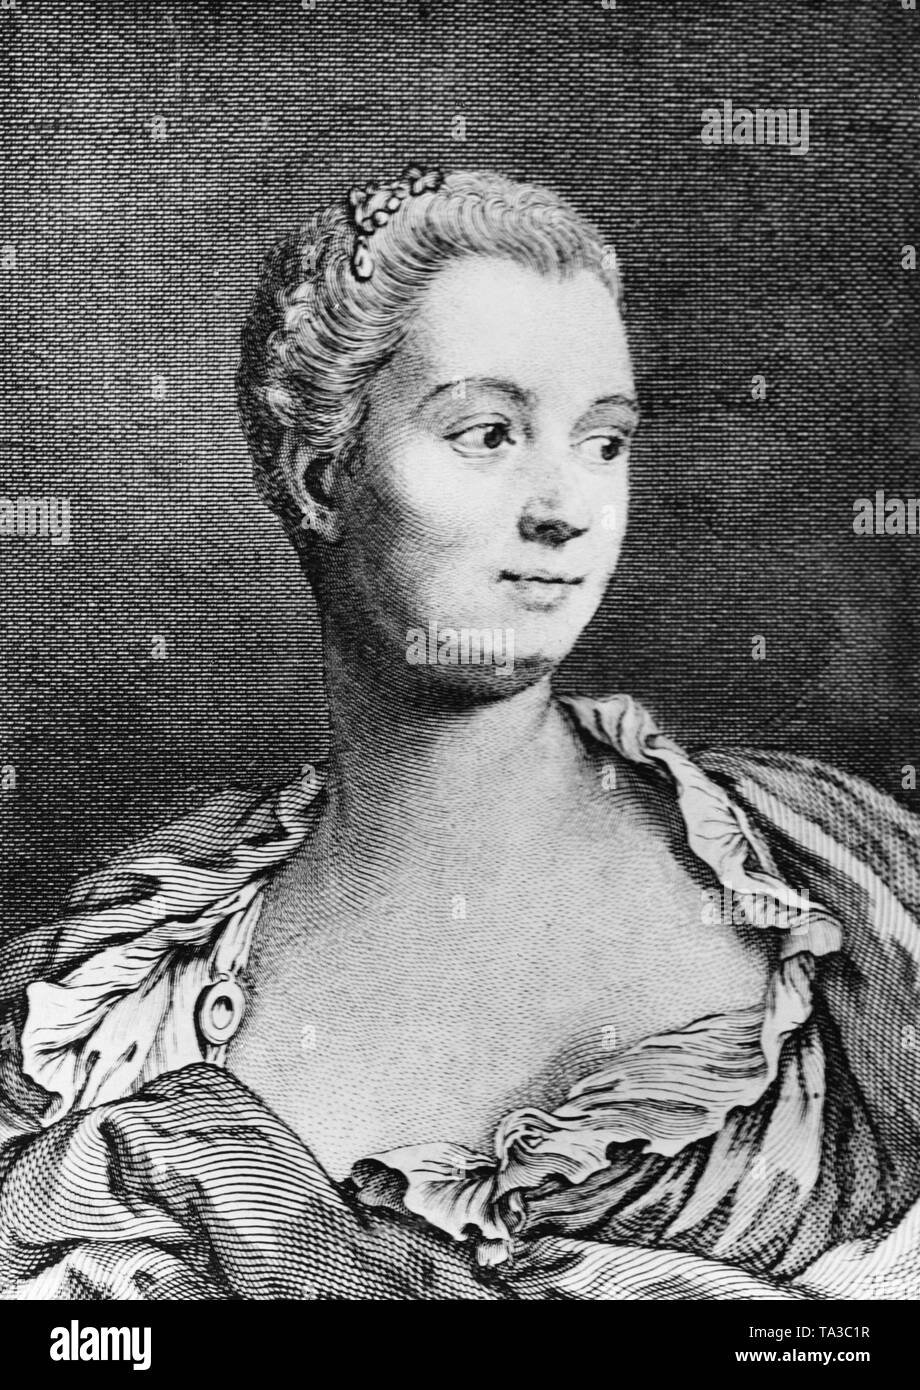 Porträt einer Frau, die mit modernen Frisur aus dem 18. Jahrhundert. Stockfoto